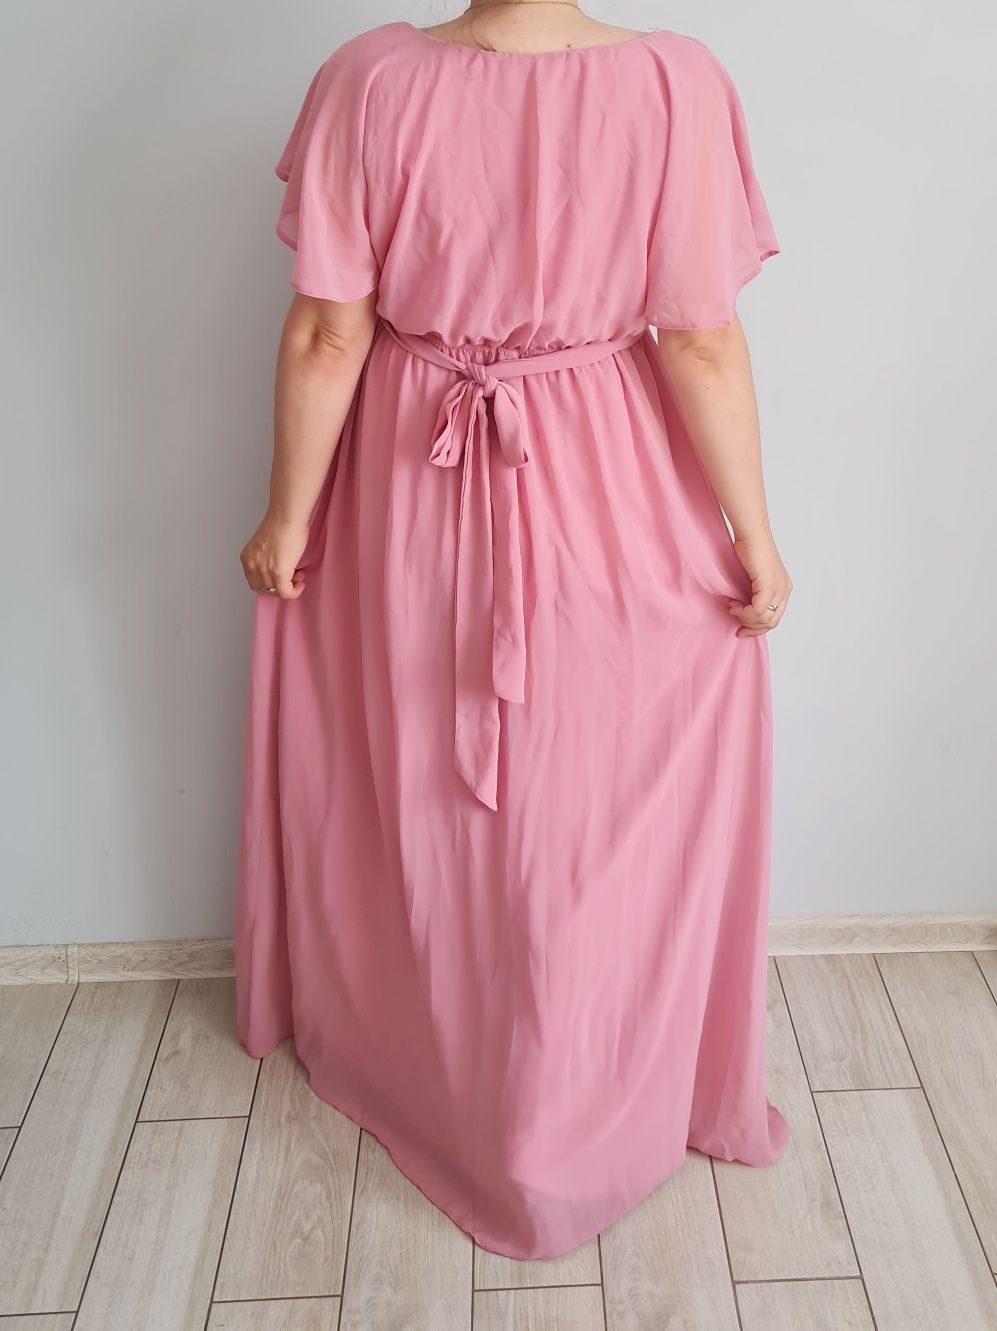 Długa różowa sukienka suknia wieczorowa maxi 
Goddiva 
Rozm 42

Piękna